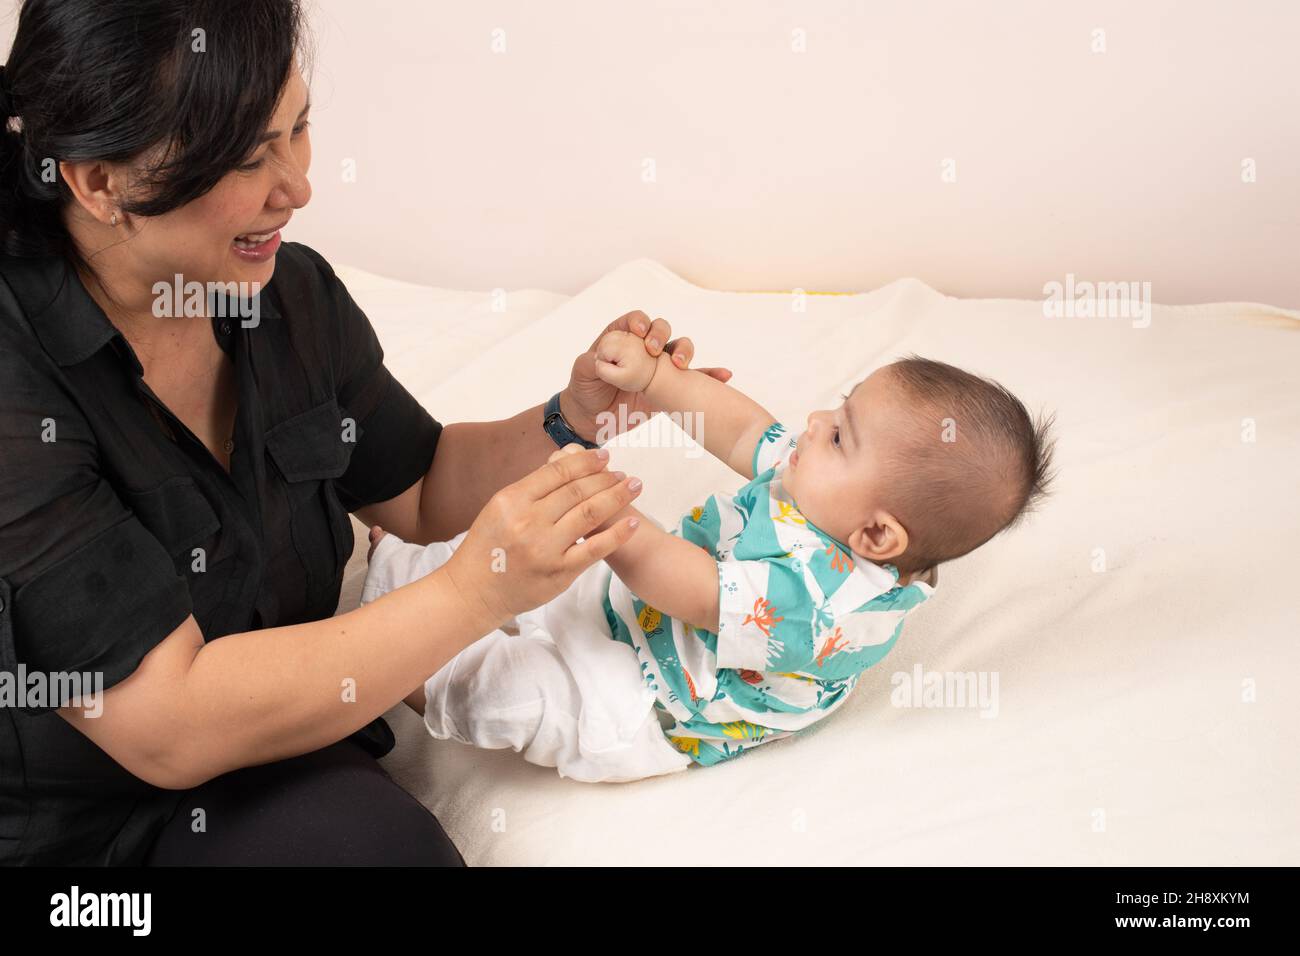 niño de 3 meses con madre, tirado a la posición sentada mientras ella lo tira de sus manos Foto de stock